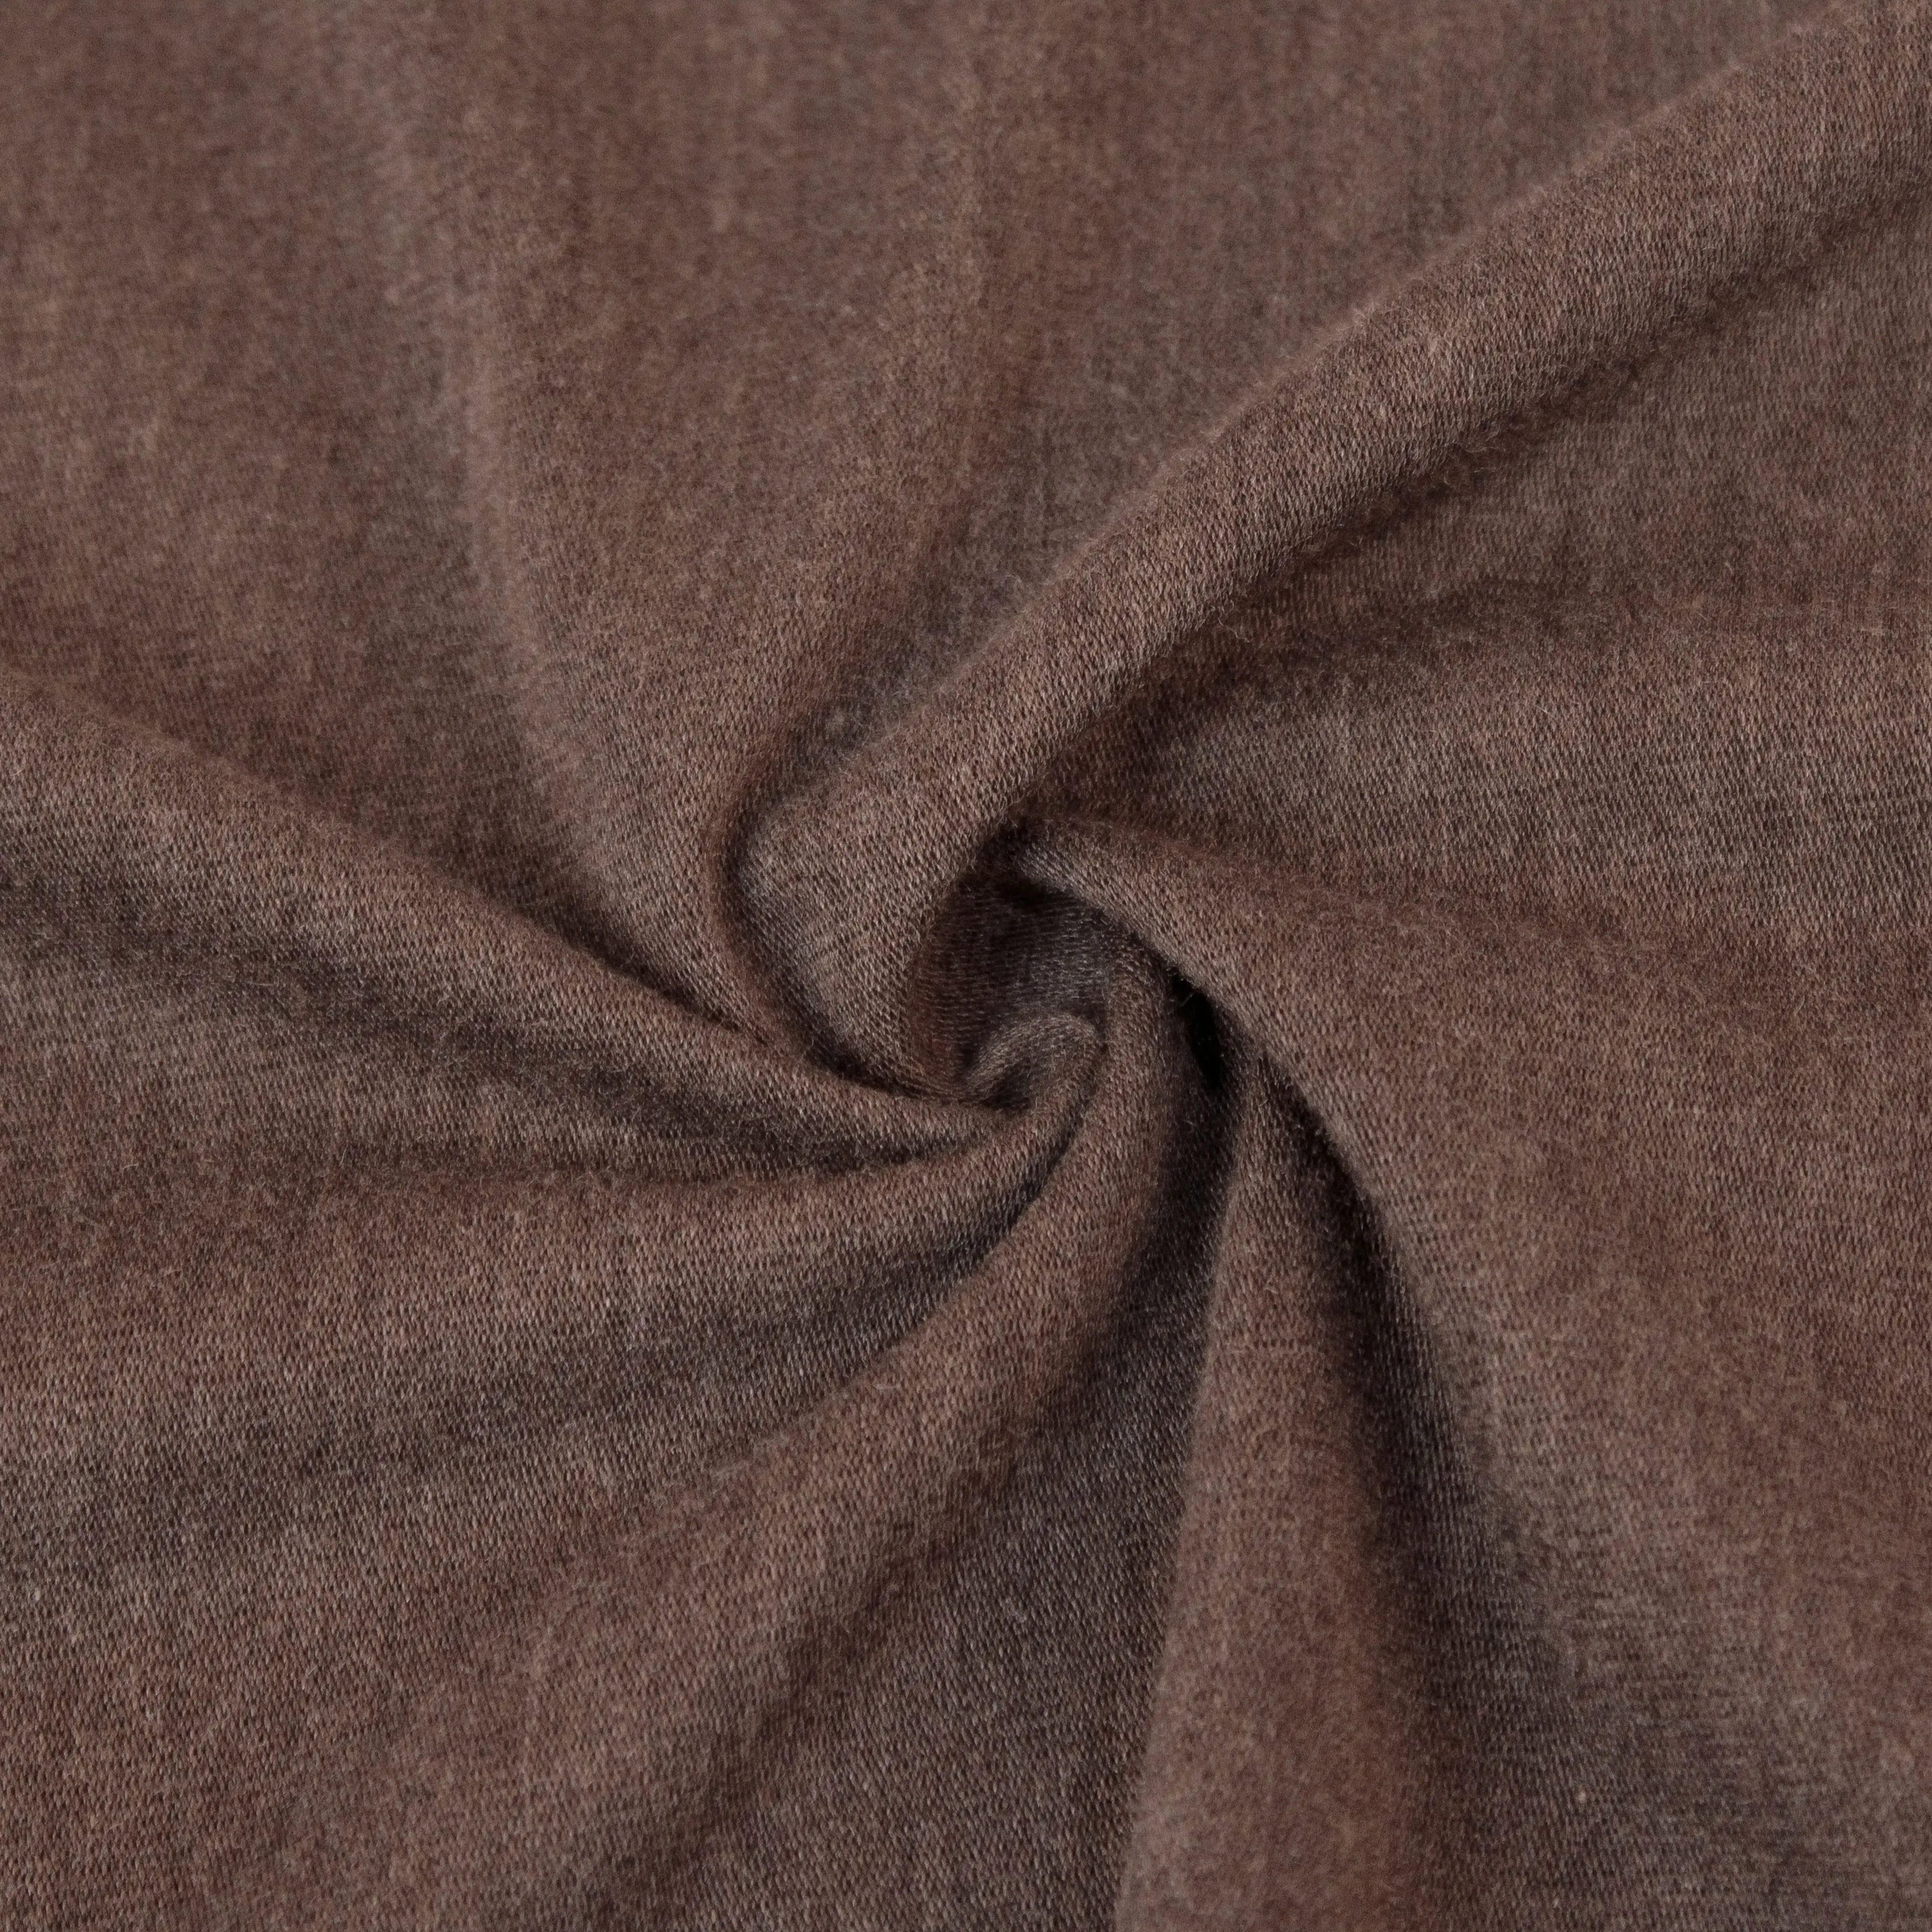 Best Seller fabbrica tessile di alta qualità colorato peso leggero sottile TR tessuto 65T 35R tessuto per gli uomini tuta